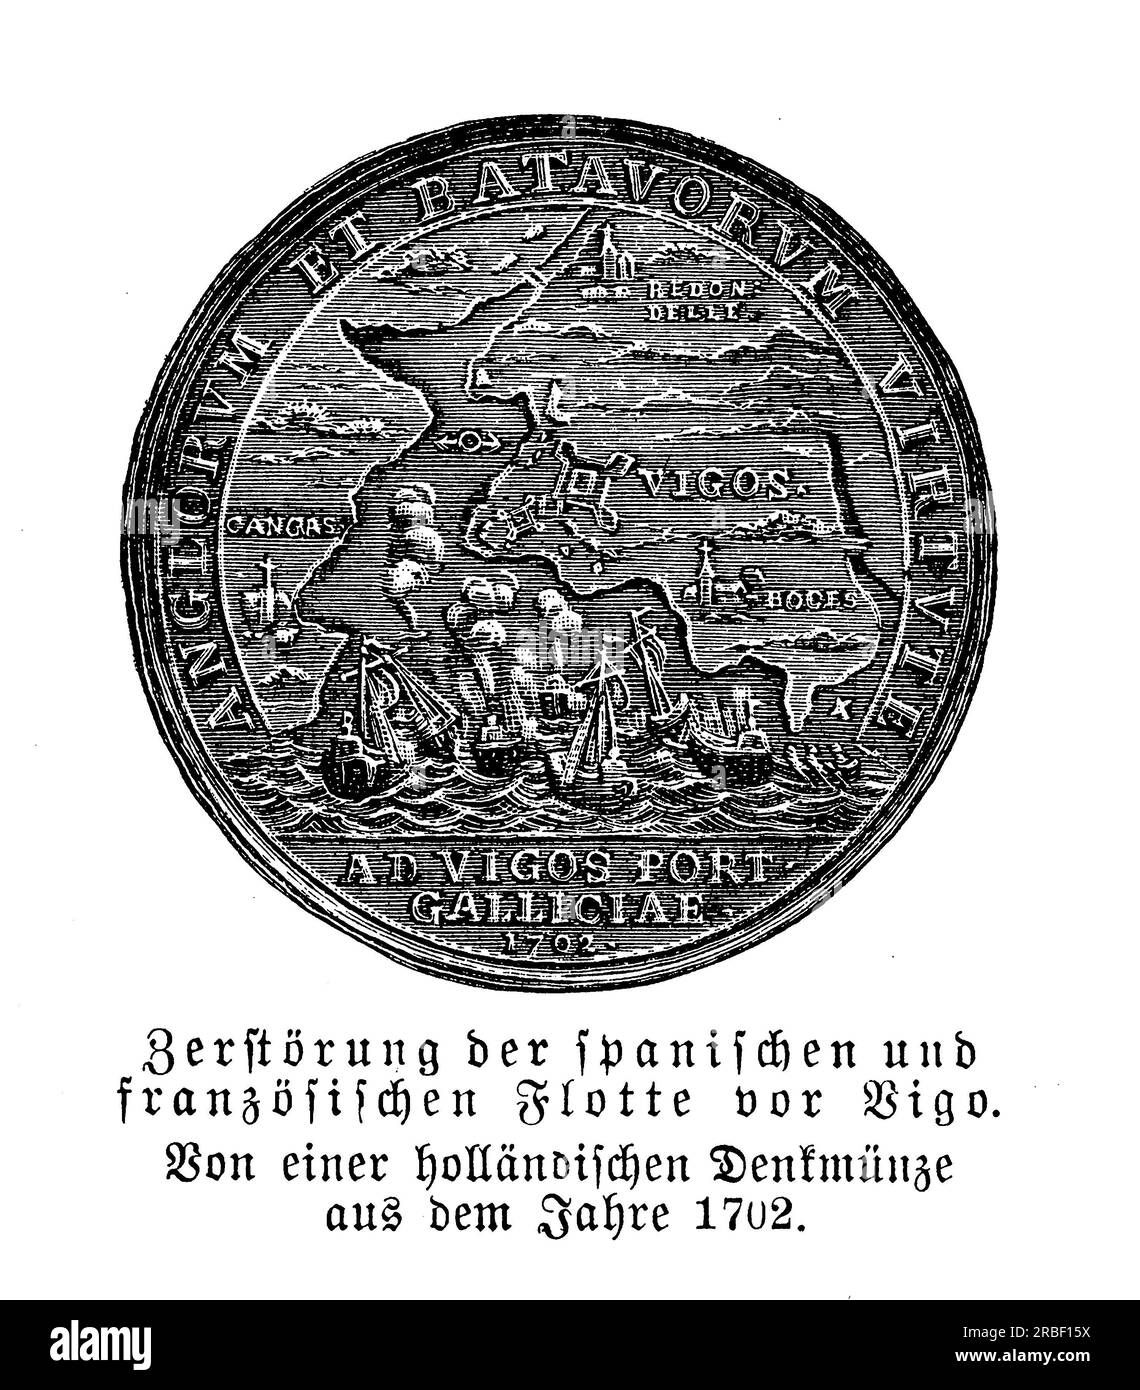 Medaglia comemmorativa olandese della battaglia della baia di Vigo, 1702, nota anche come battaglia di Rande in Galizia, scontro navale durante la guerra di successione spagnola con la sconfitta della flotta franco-spagnola Foto Stock